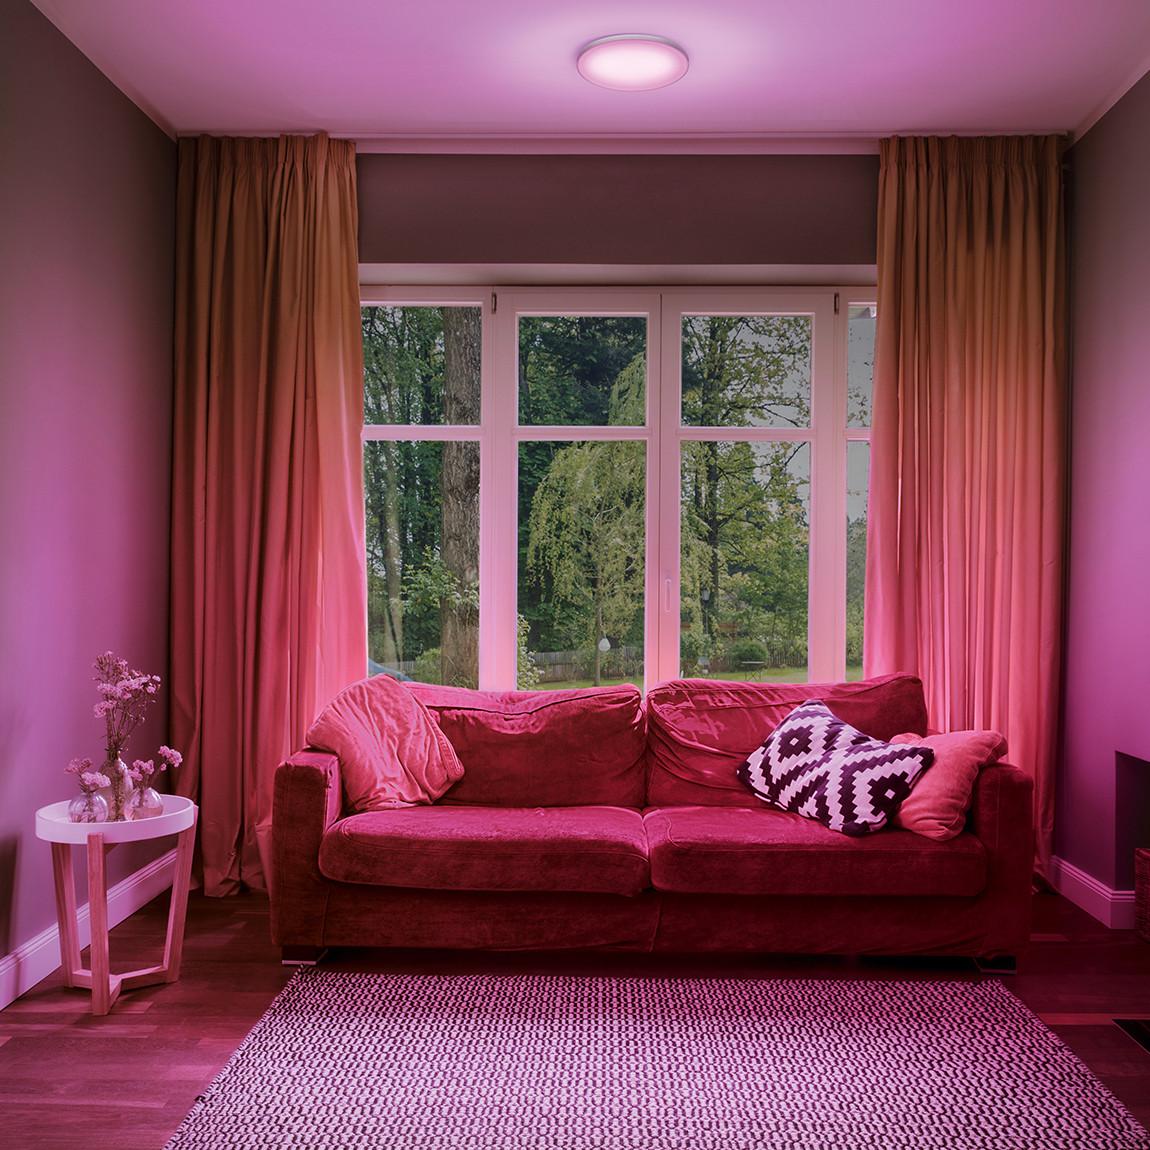 Ledvance SMART+ Planon Frameless rund CCT 300 mm pinkes Licht mit Sofa